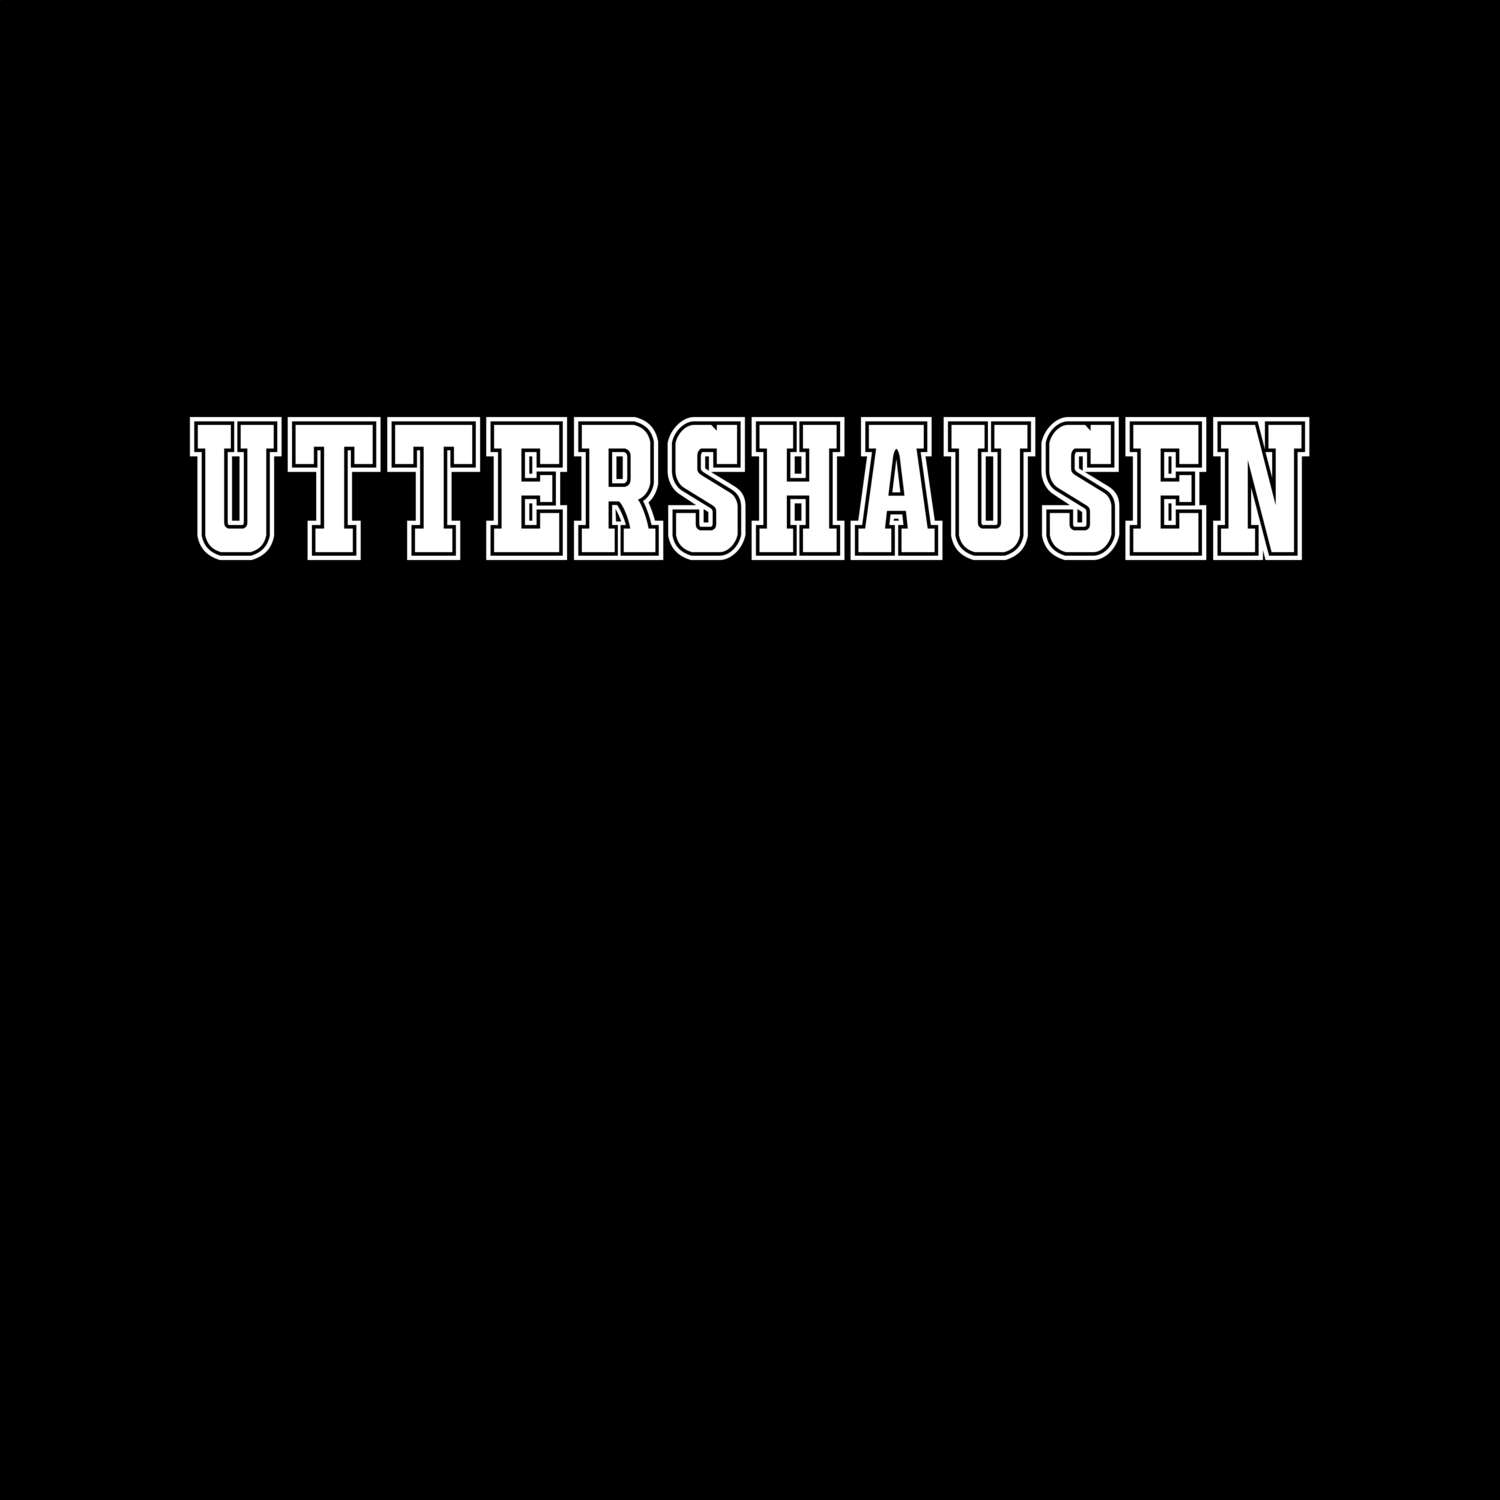 Uttershausen T-Shirt »Classic«